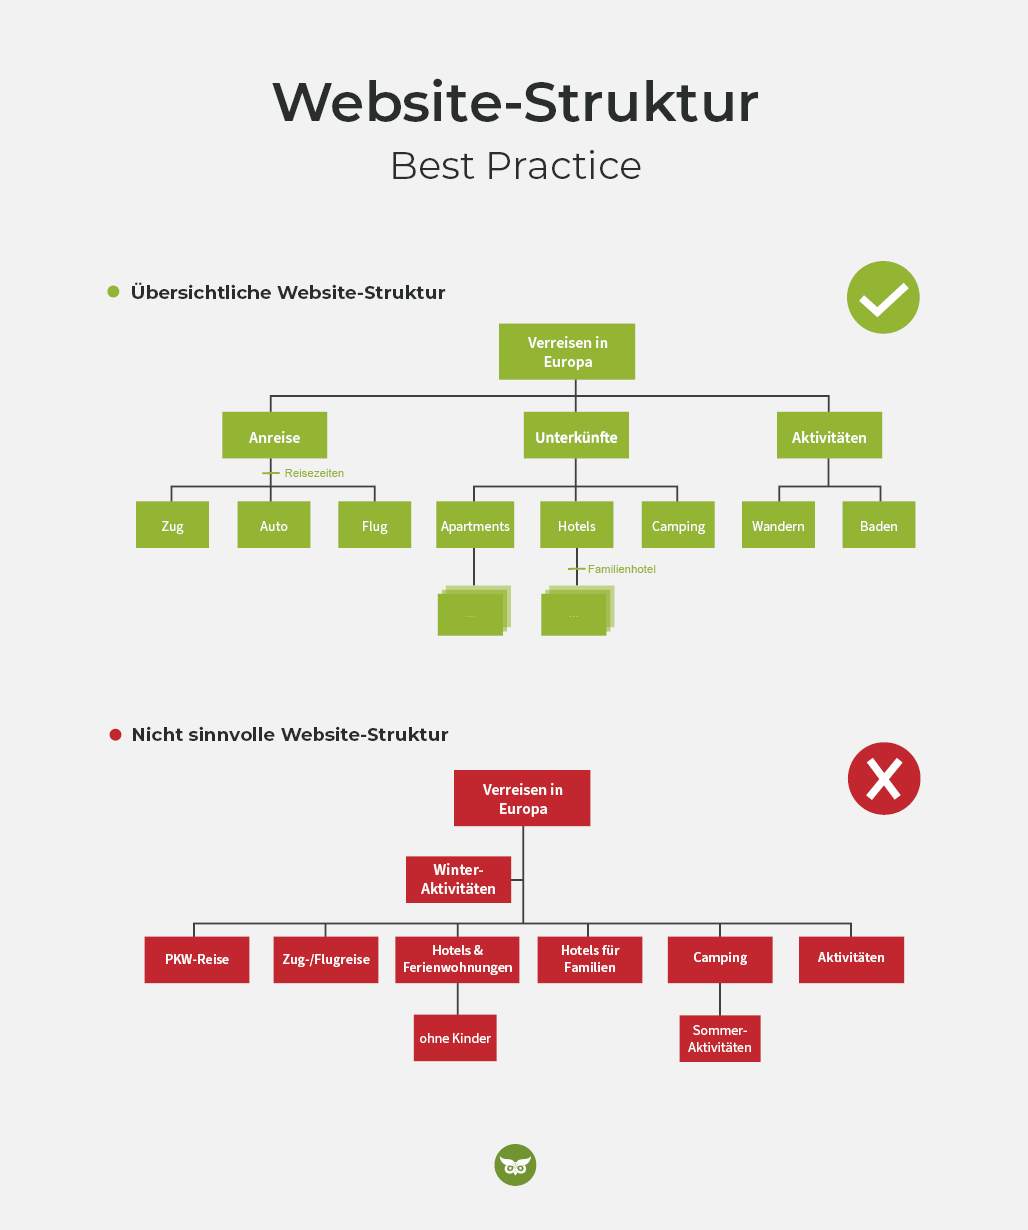 Best Practice einer Website-Struktur